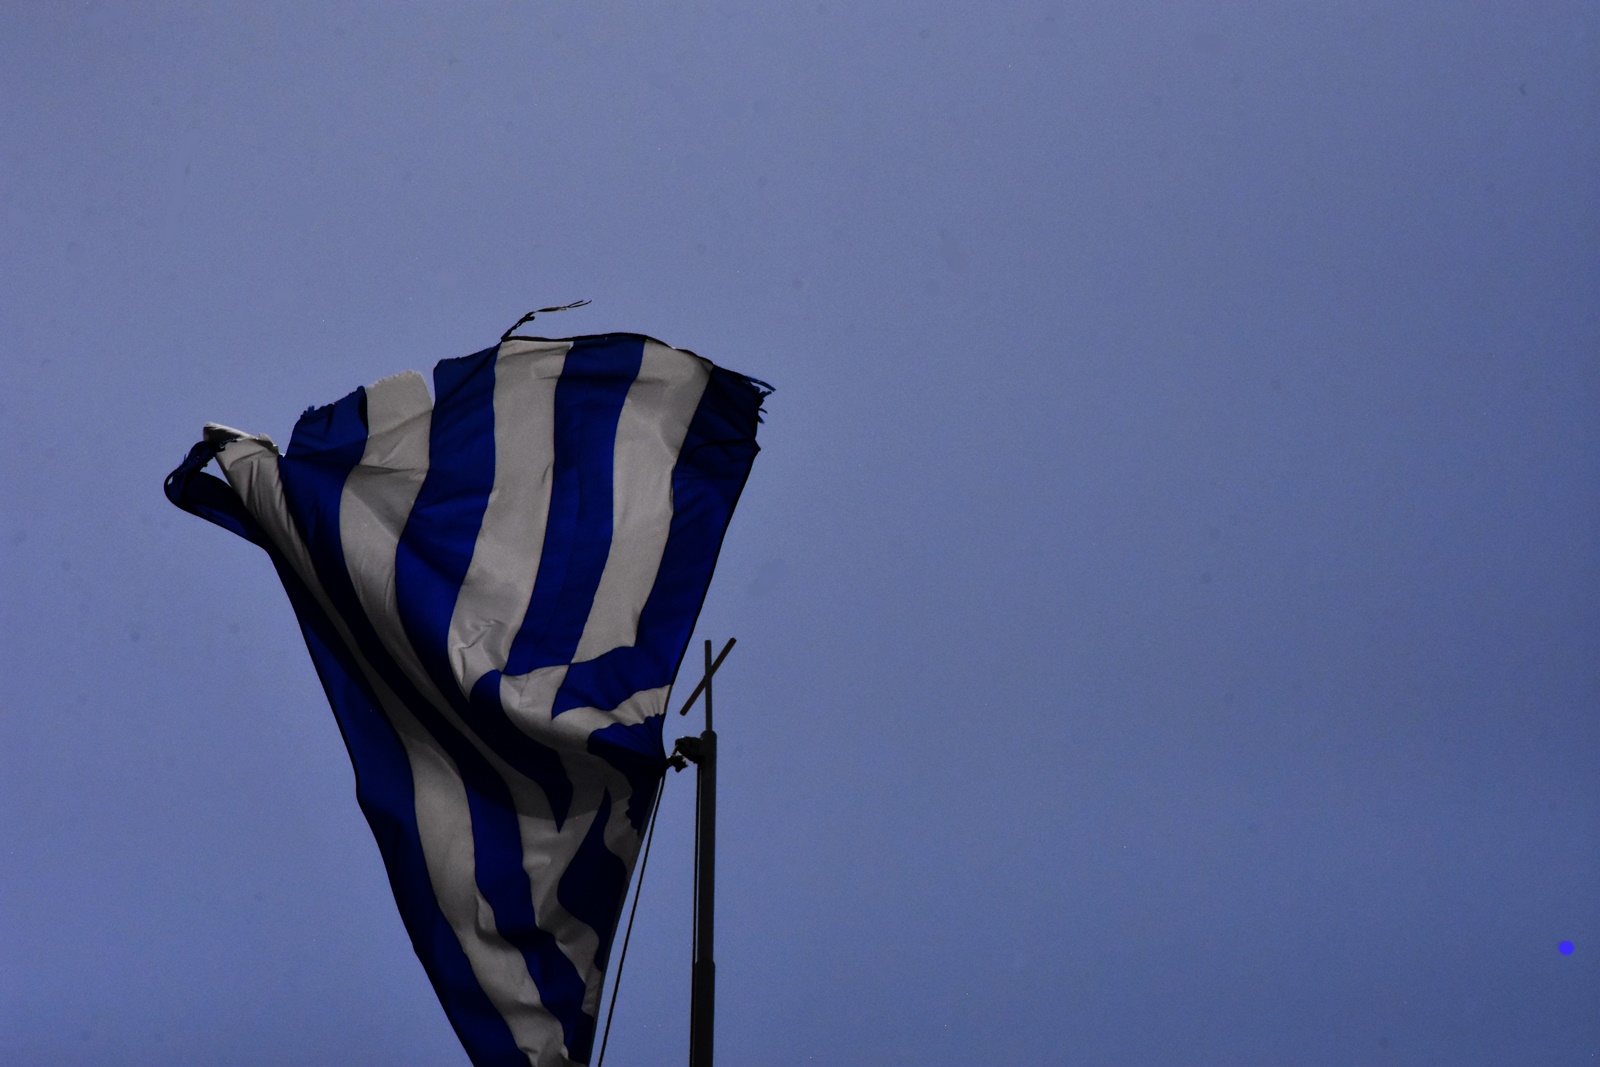 Ελπιδοφόρος: «Οι προσευχές όλων μας είναι για την ασφάλεια και την ελευθερία της Ελλάδας και της Κύπρου»